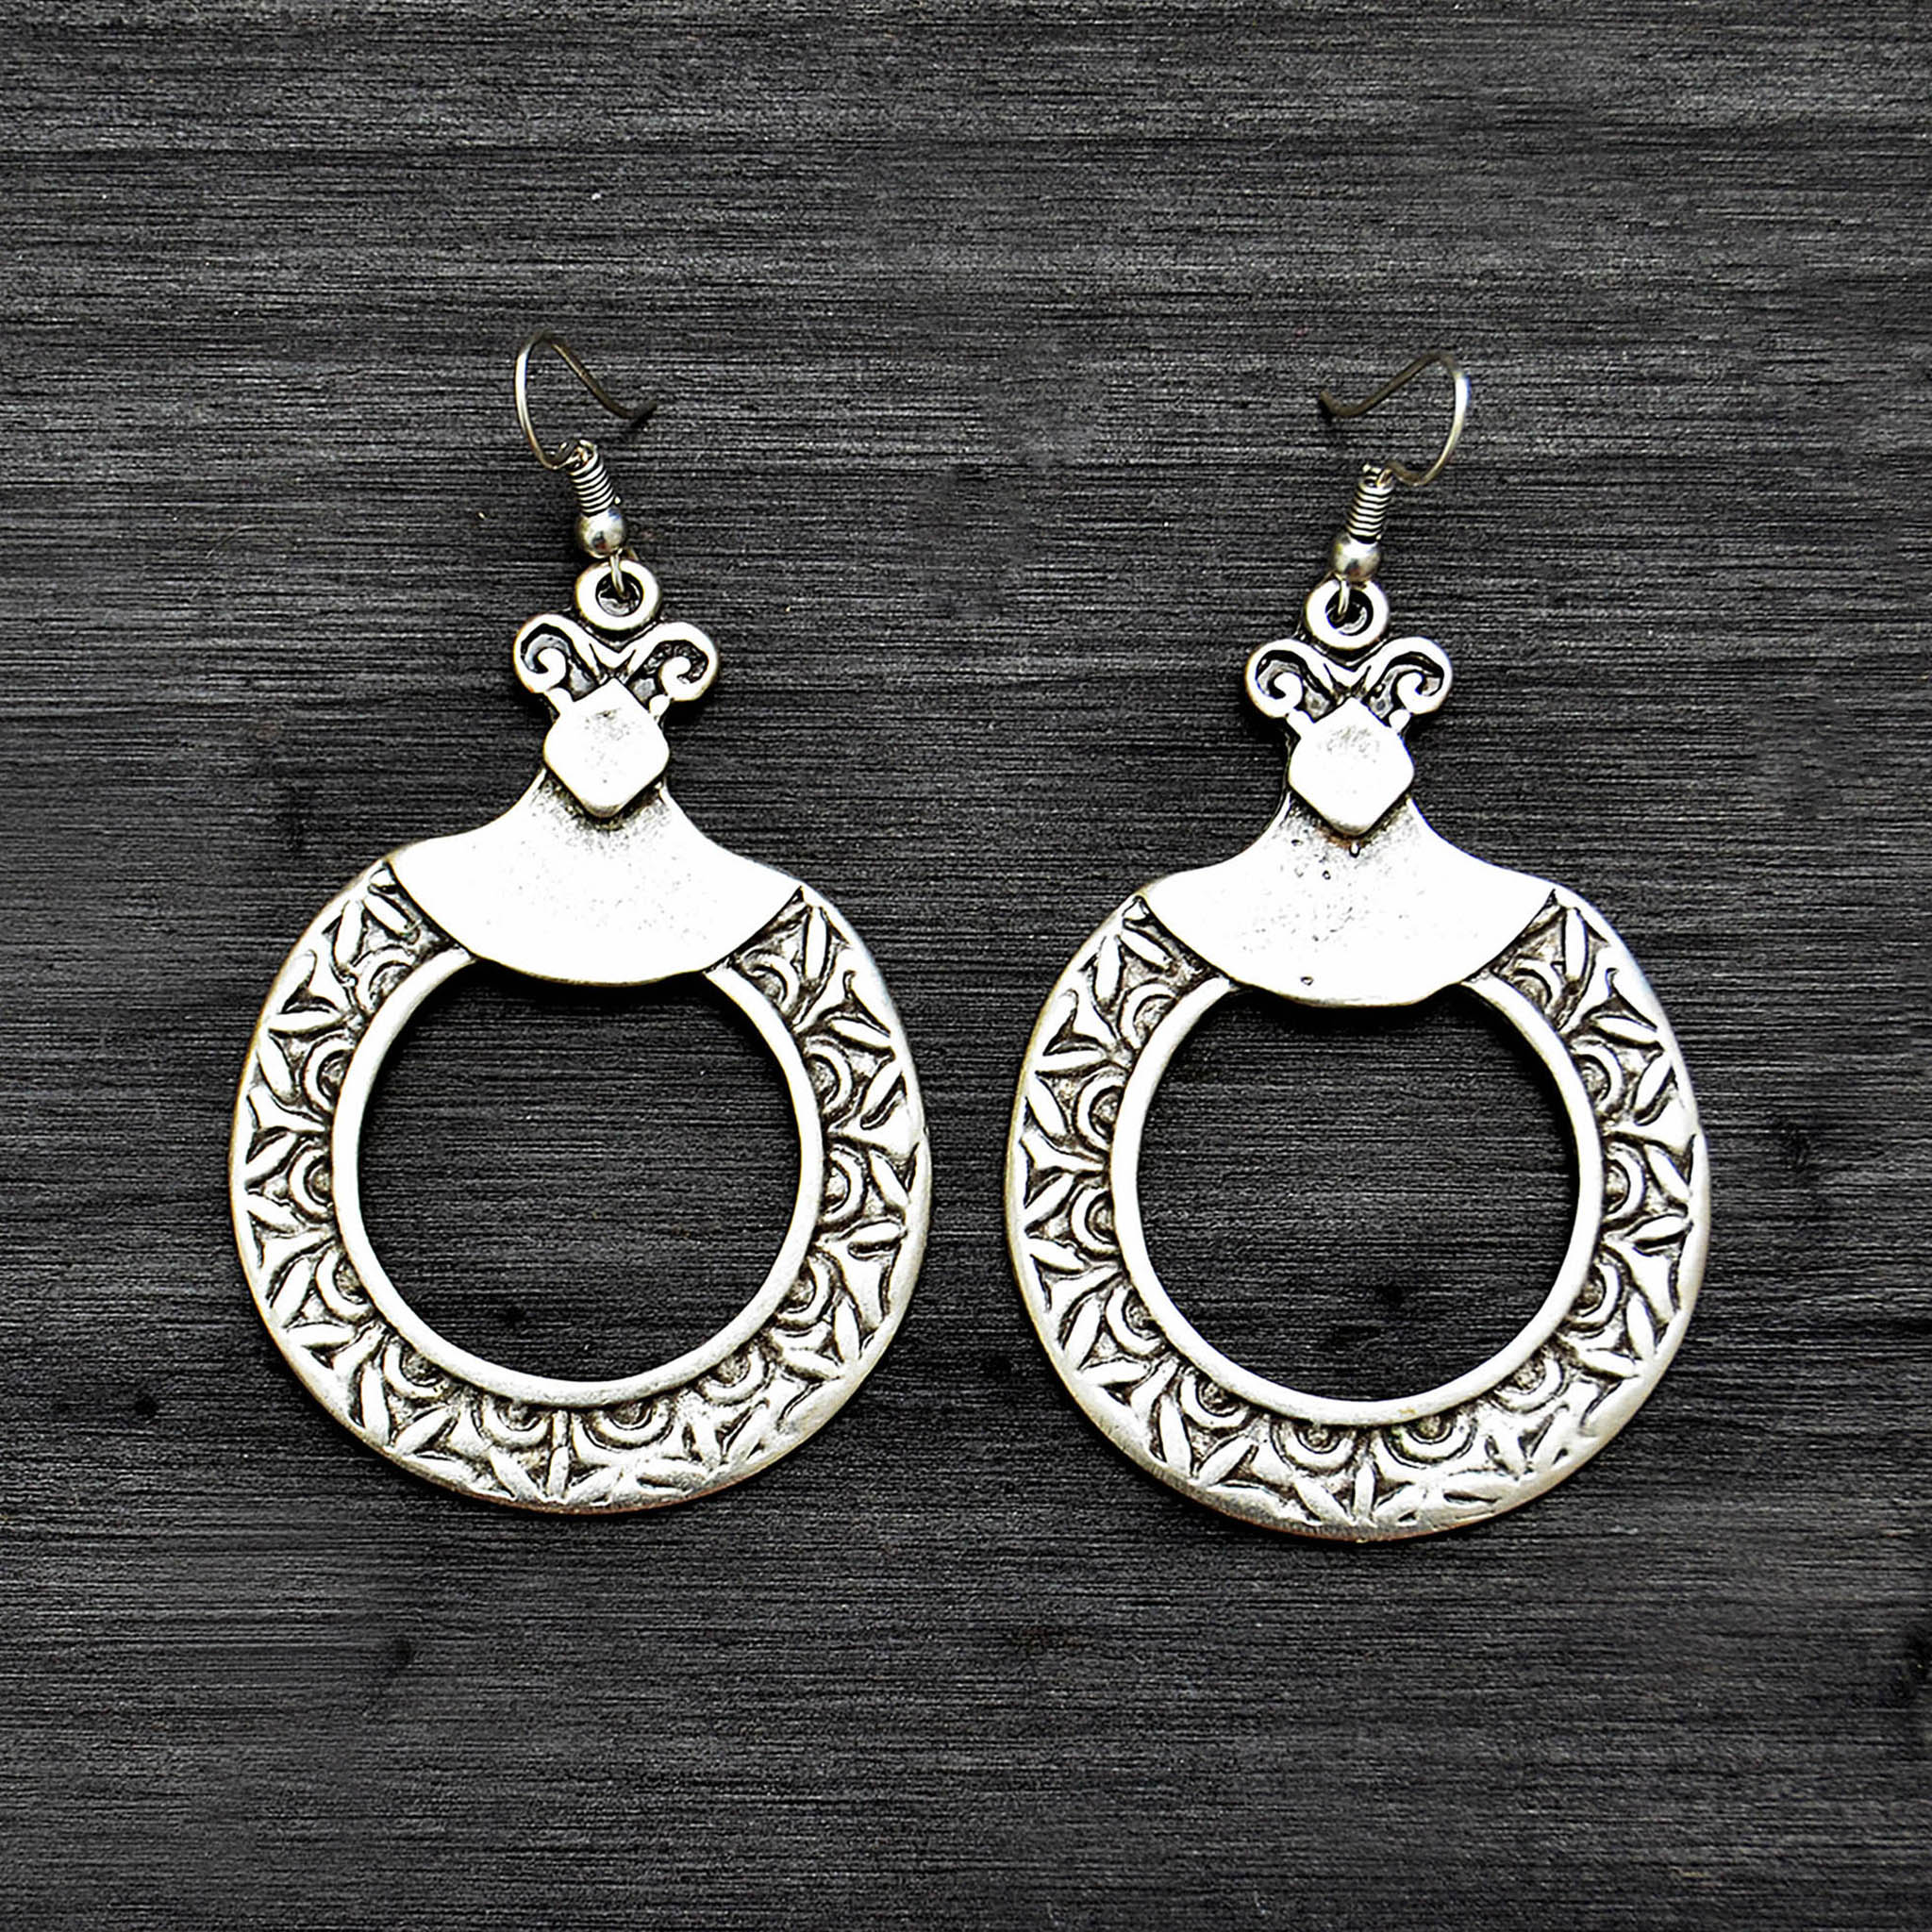 Turkish hoop earrings made in silver plated